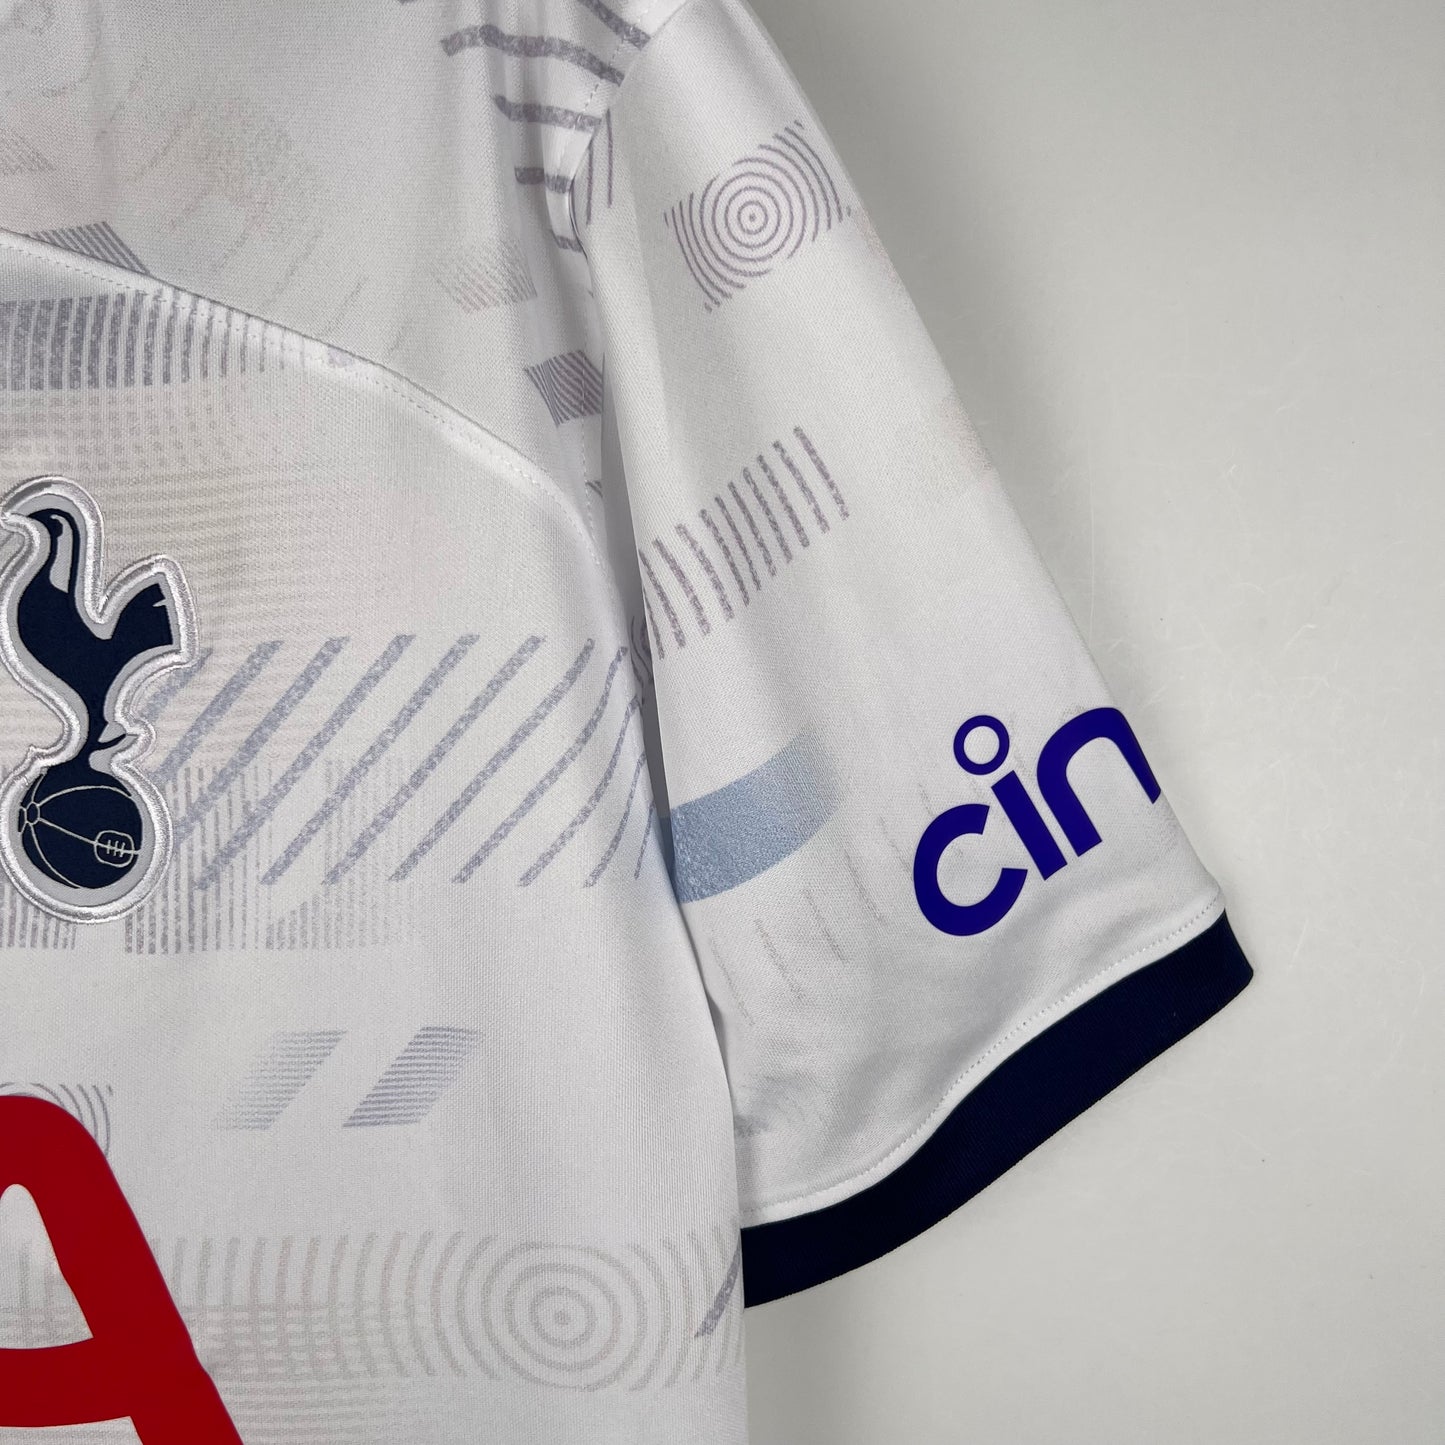 Tottenham Hotspur 23/24 Home Kit